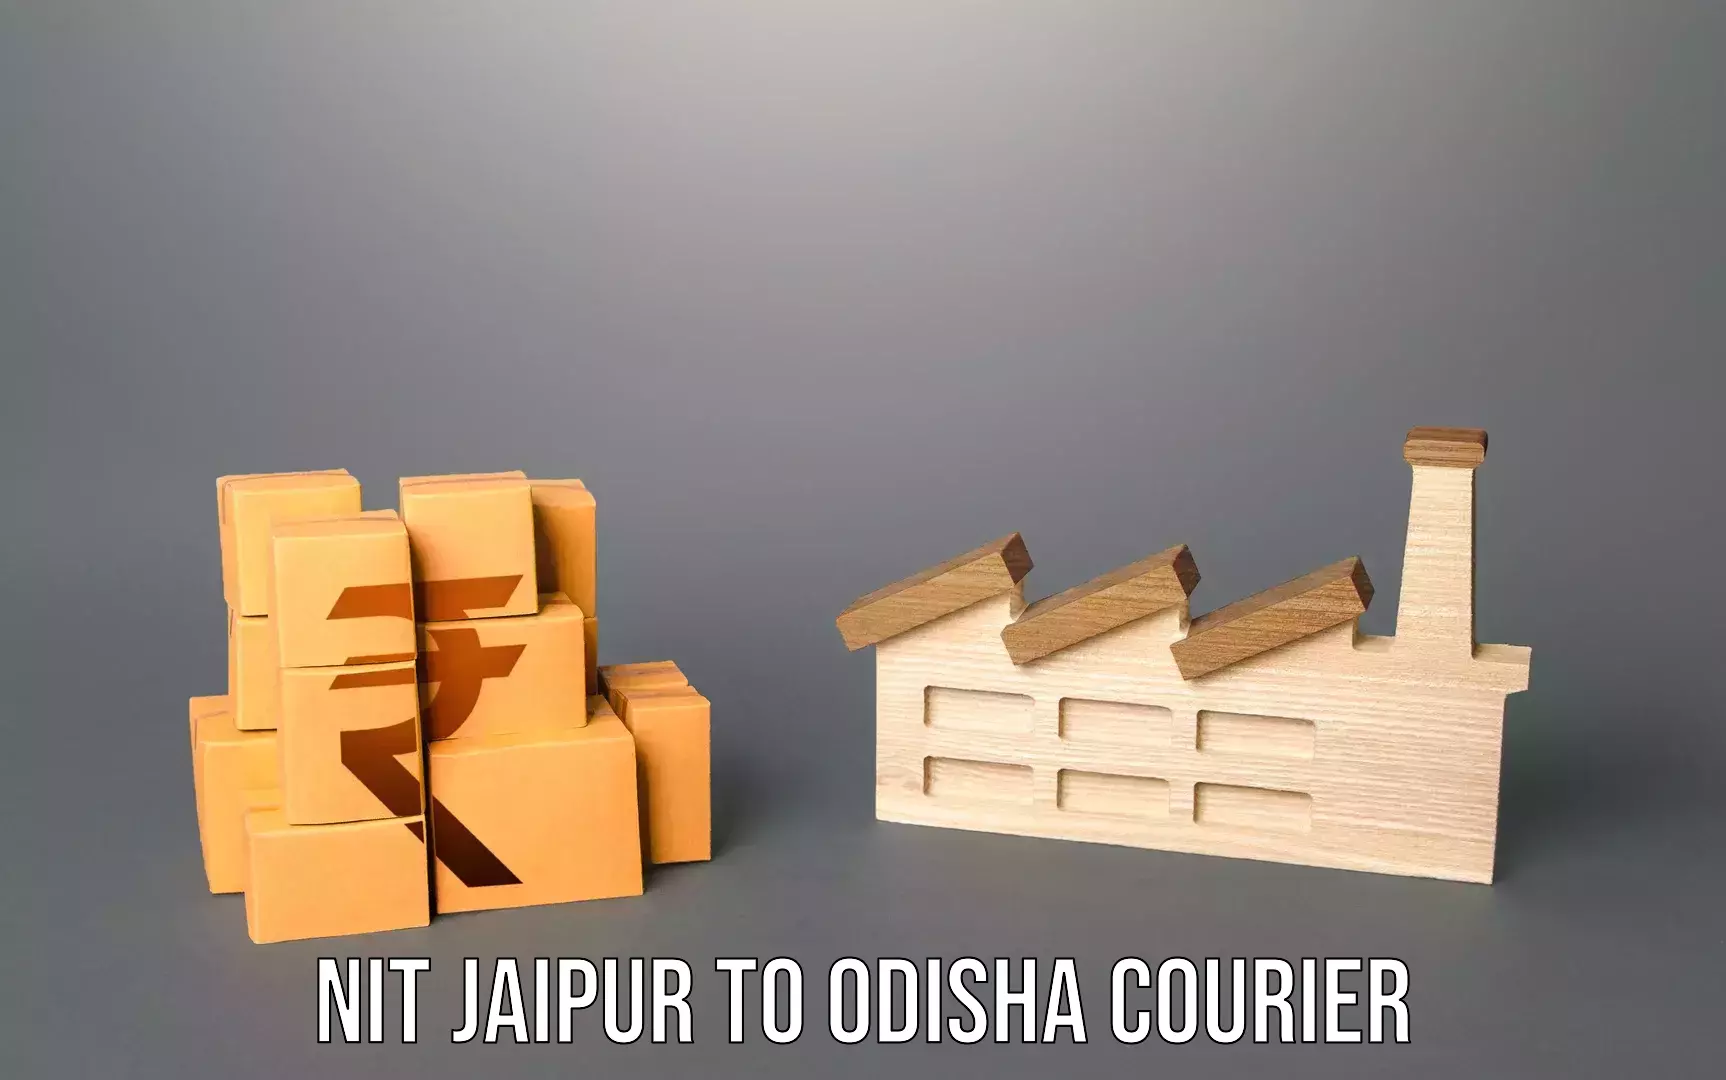 Luggage forwarding service NIT Jaipur to Odisha